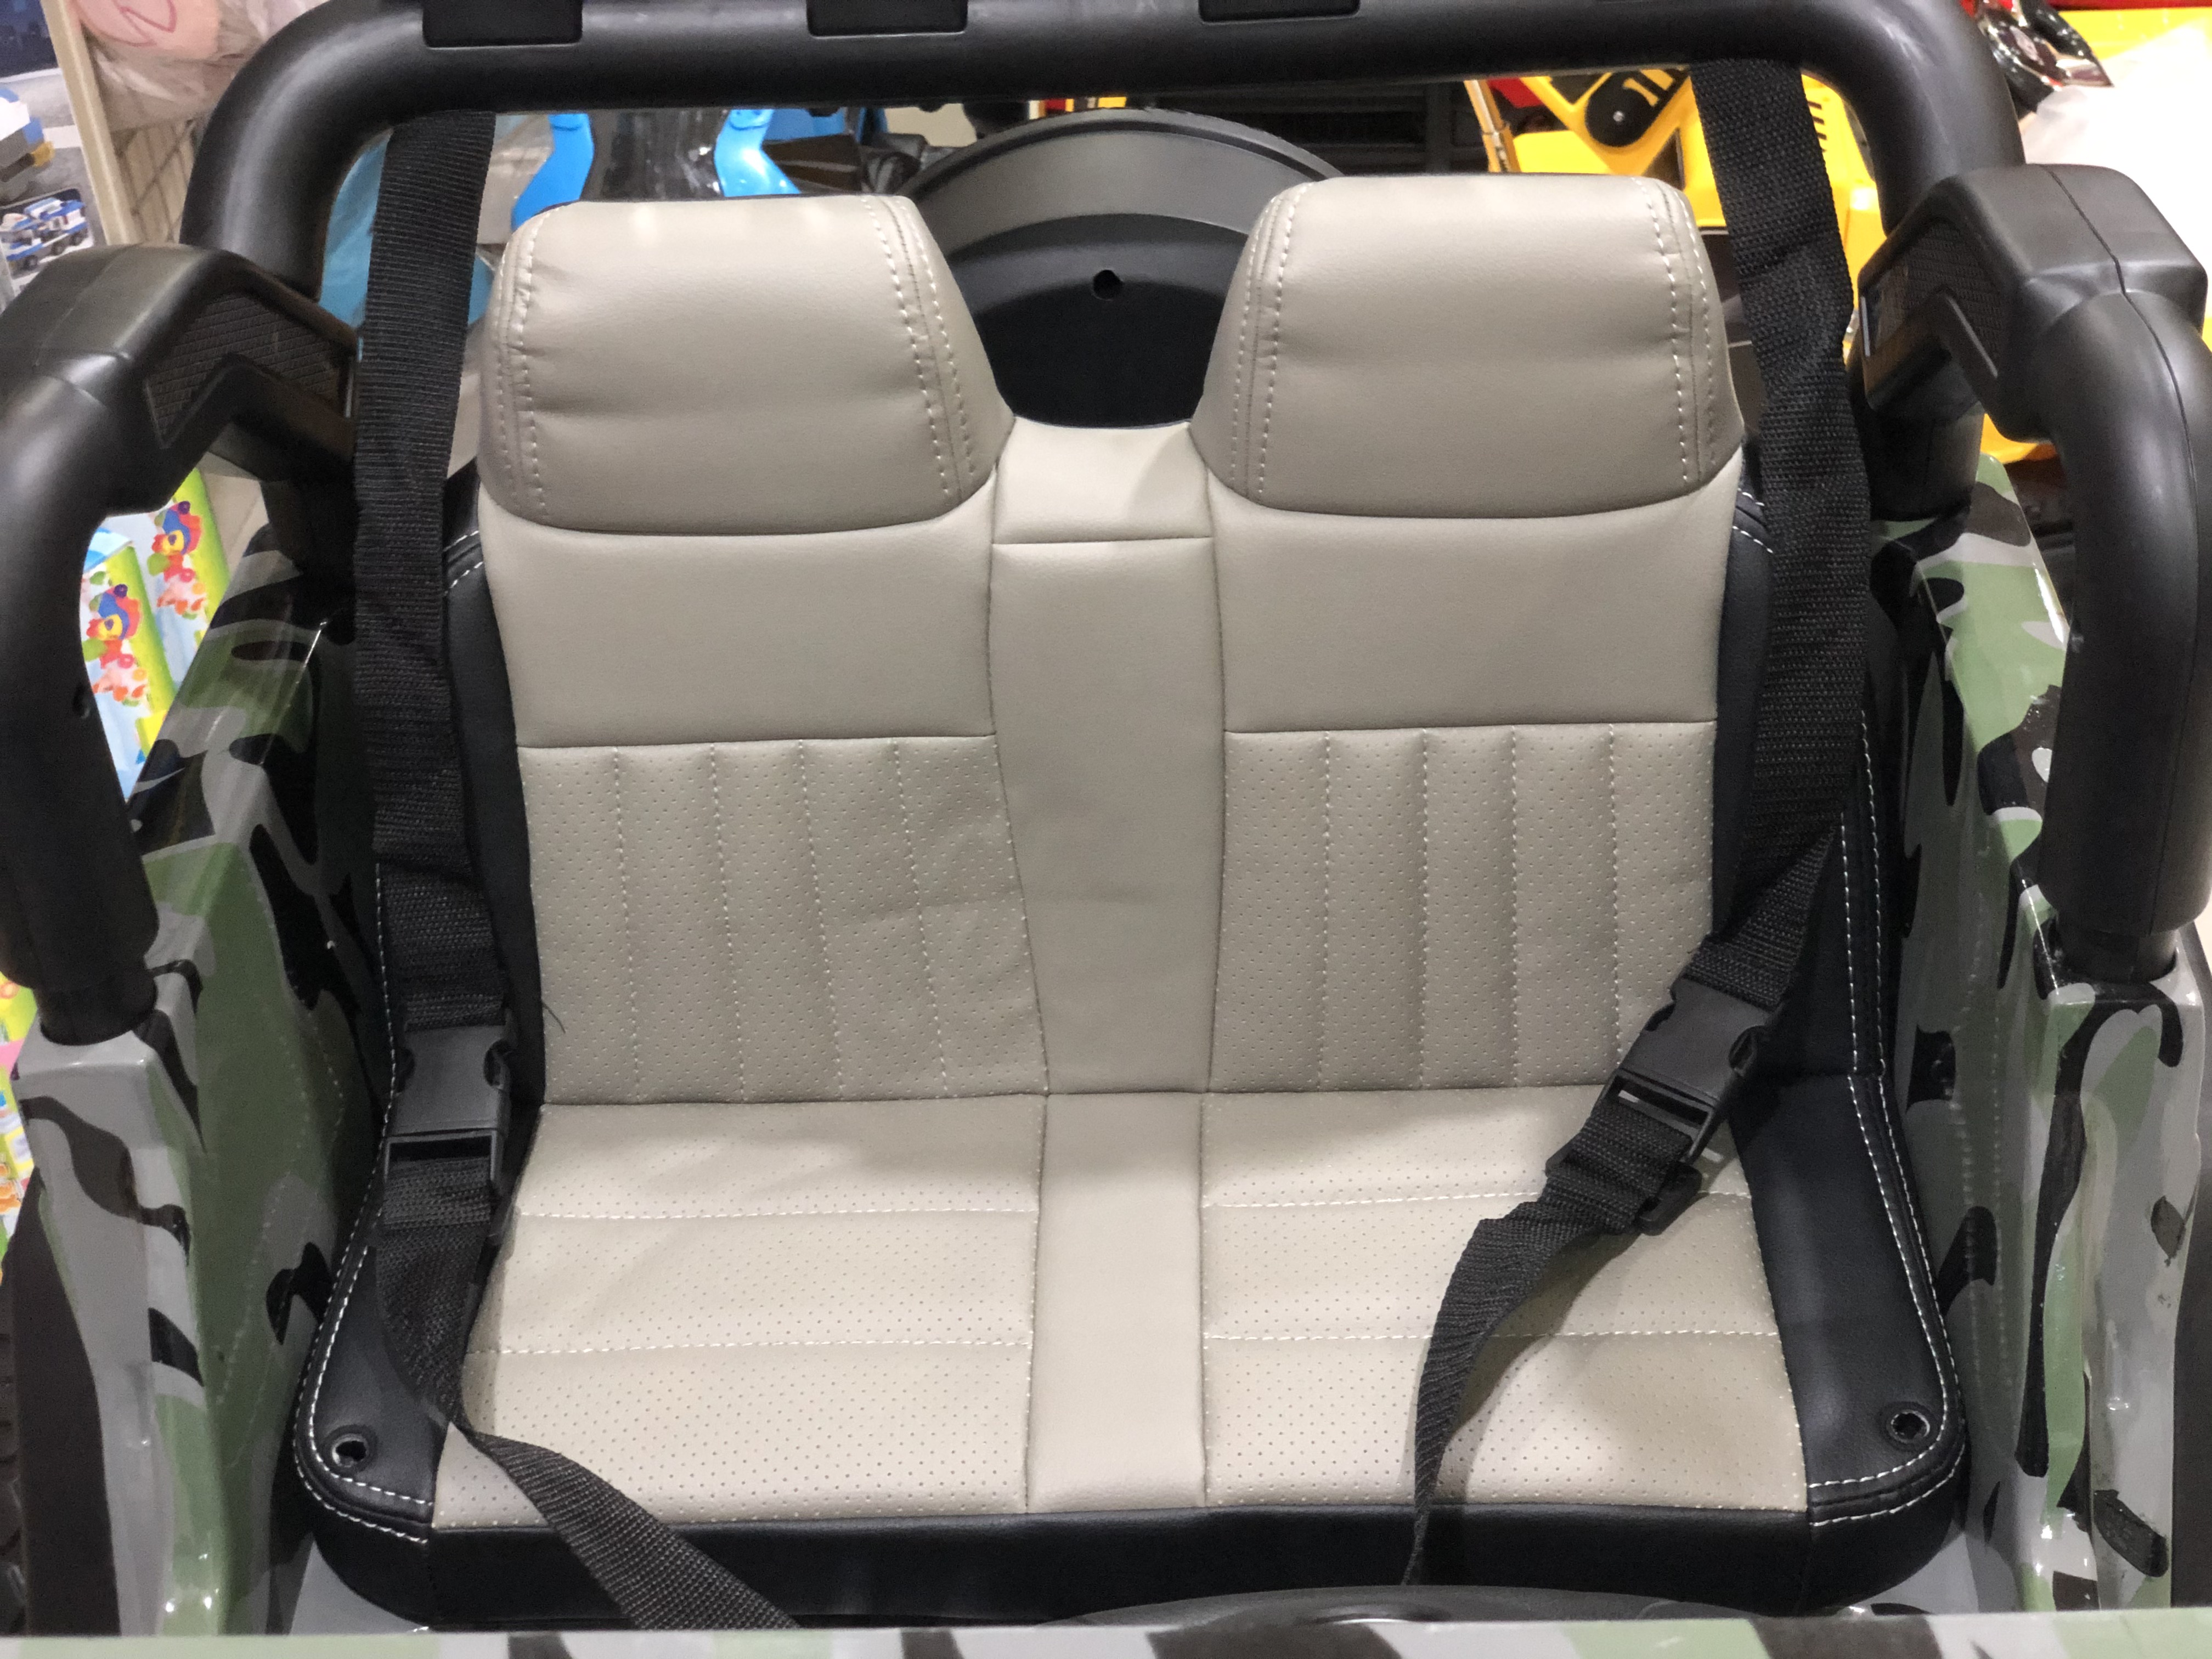 Xe điện cho bé HP-012 với ghế nệm da 2 chỗ ngồi 